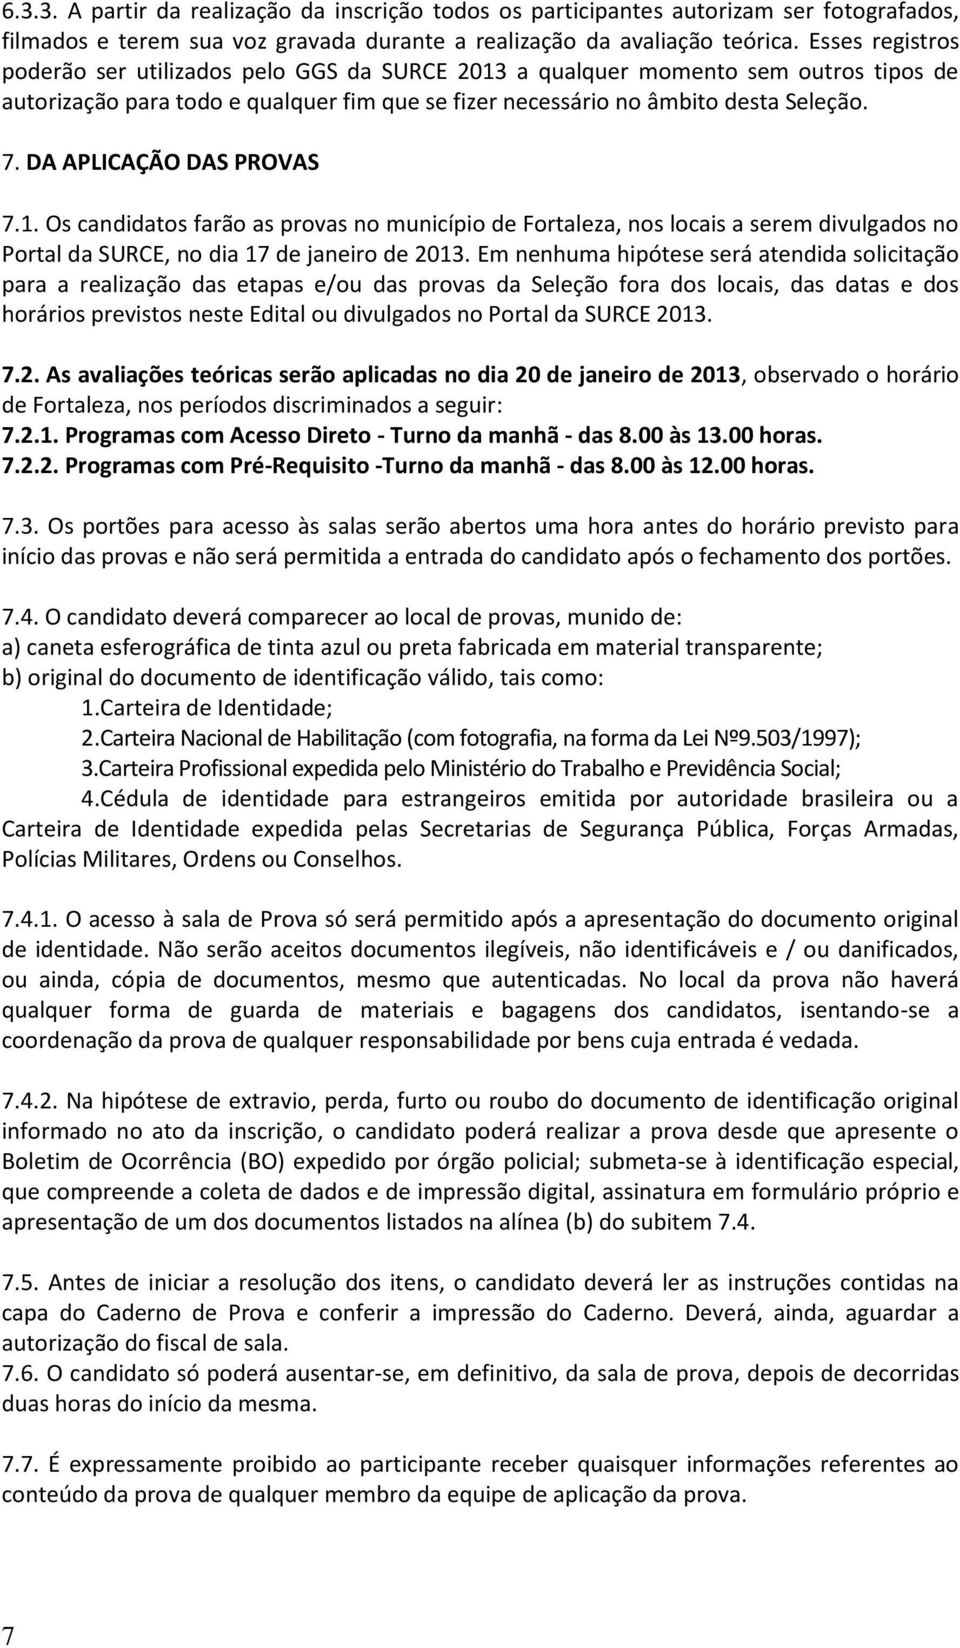 DA APLICAÇÃO DAS PROVAS 7.1. Os candidatos farão as provas no município de Fortaleza, nos locais a serem divulgados no Portal da SURCE, no dia 17 de janeiro de 2013.